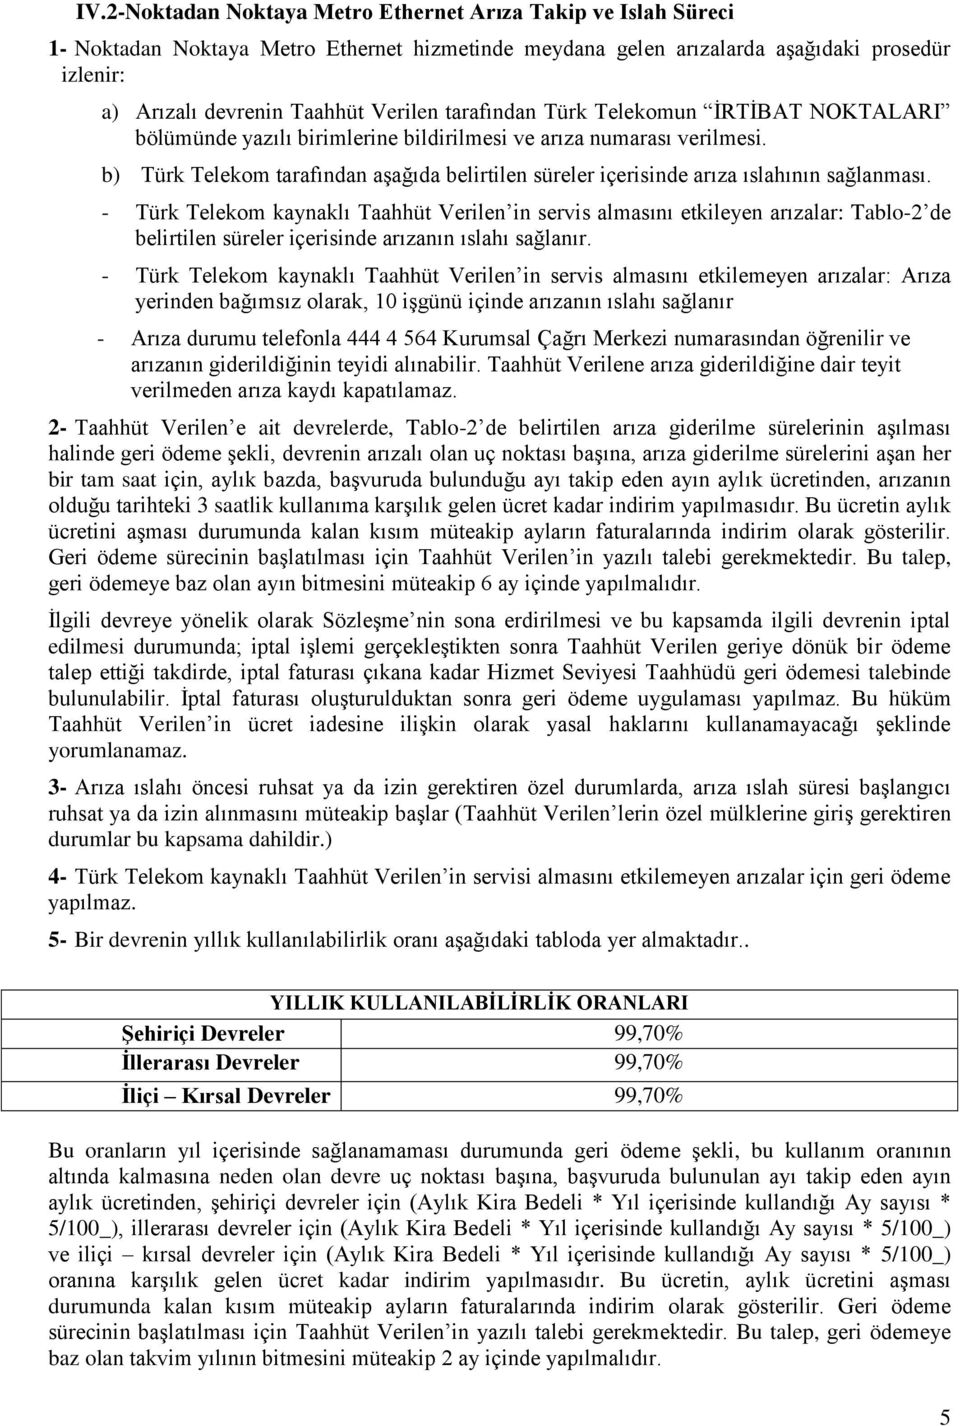 b) Türk Telekom tarafından aģağıda belirtilen süreler içerisinde arıza ıslahının sağlanması.